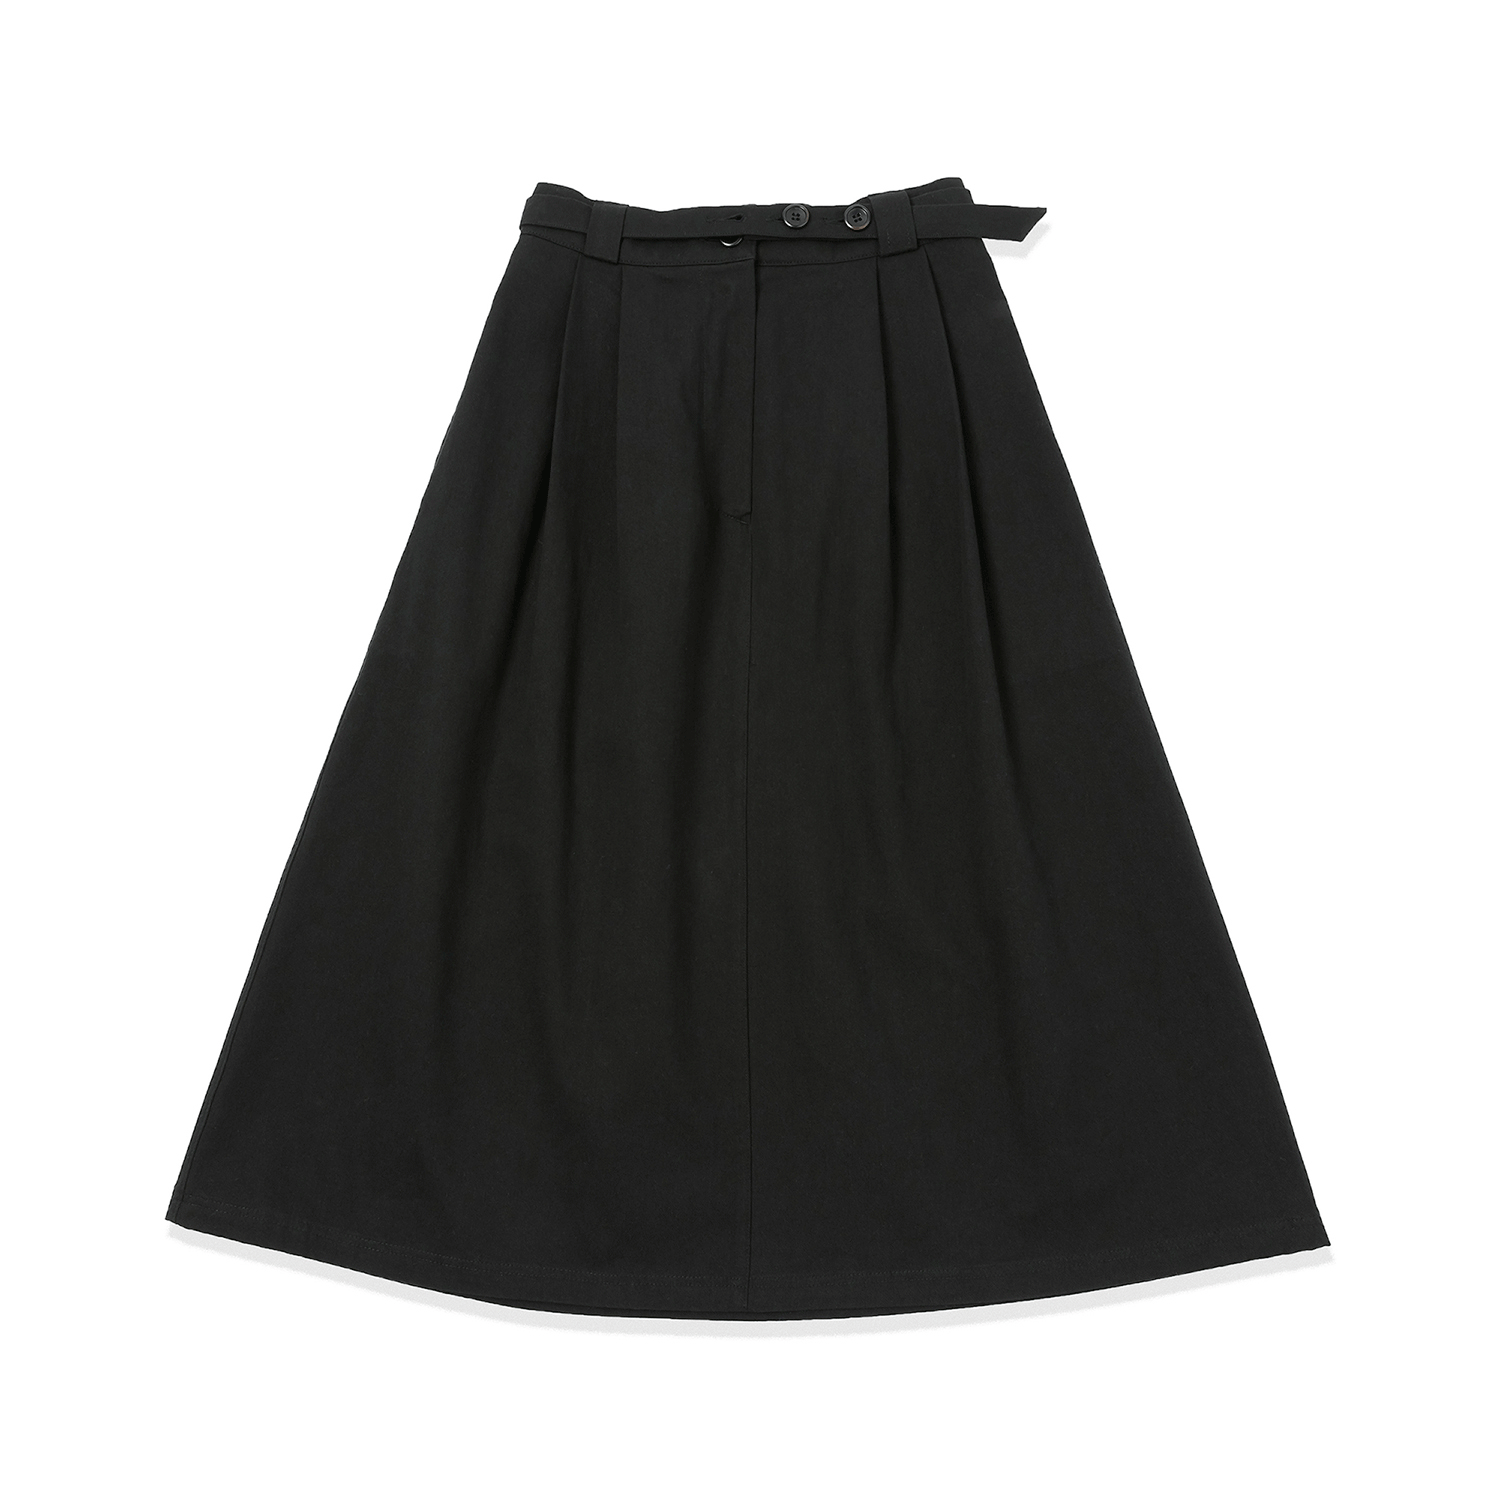 Double Button Belt Skirt - Black